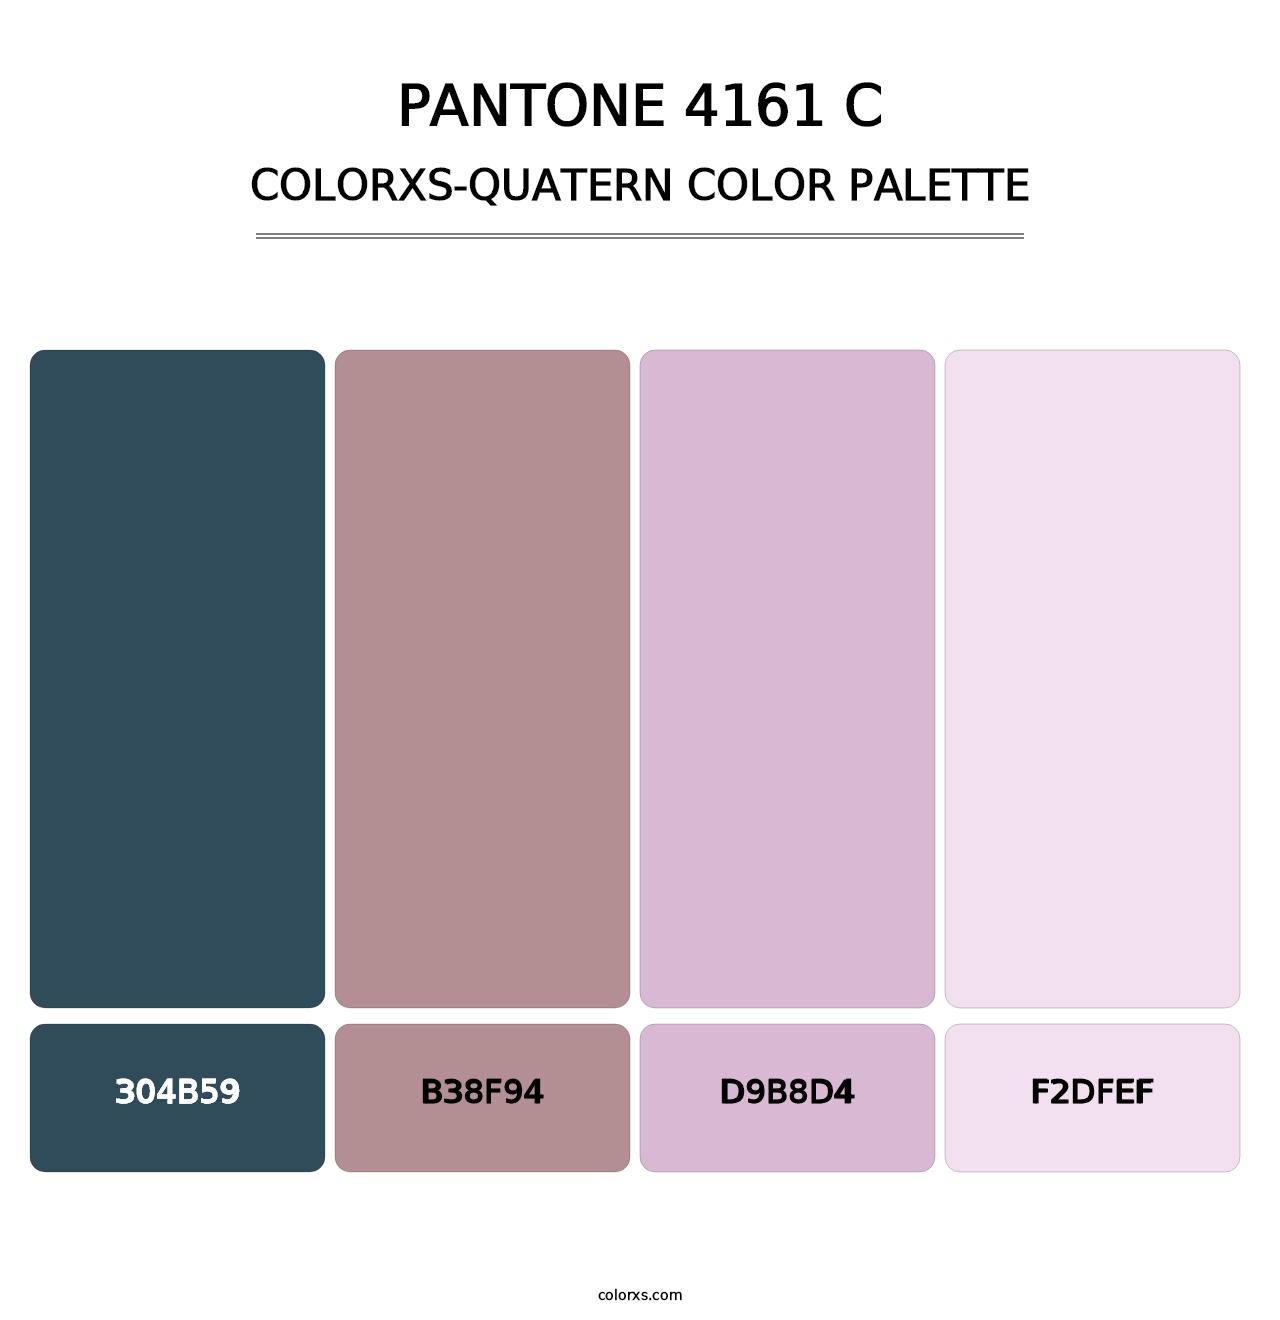 PANTONE 4161 C - Colorxs Quatern Palette